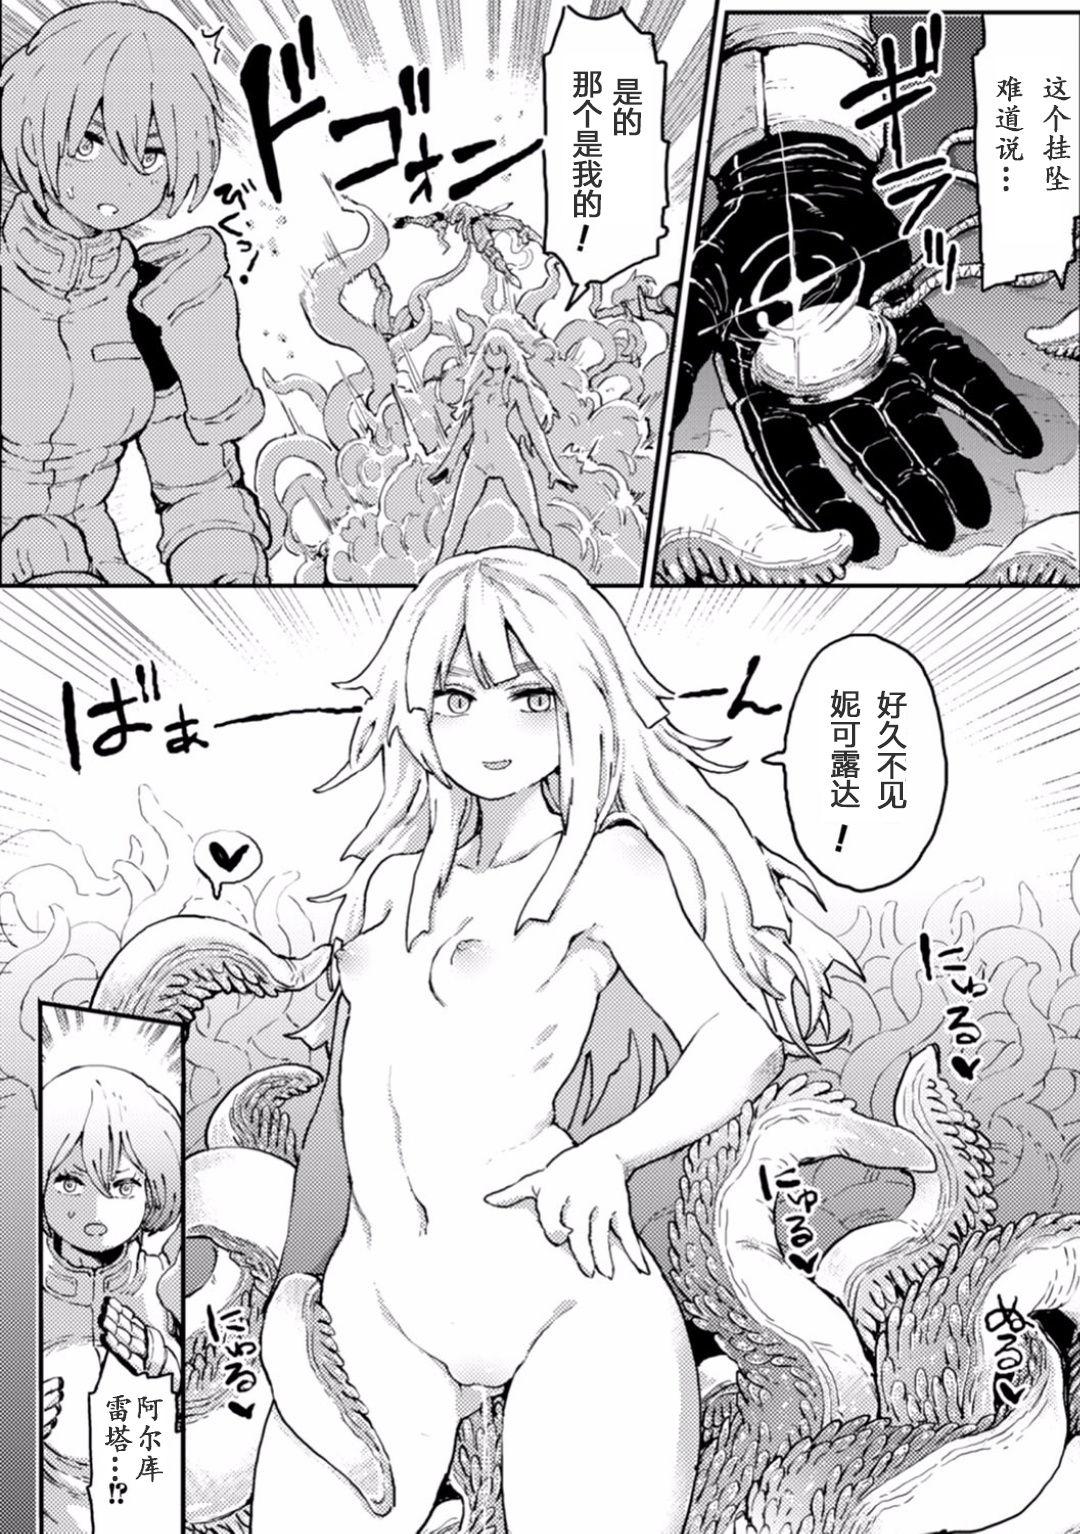 Woman Fucking 2D Comic Magazine Shokushu ni Kiseisareshi Otome no Karada Vol. 1 Hard Core Sex - Page 8